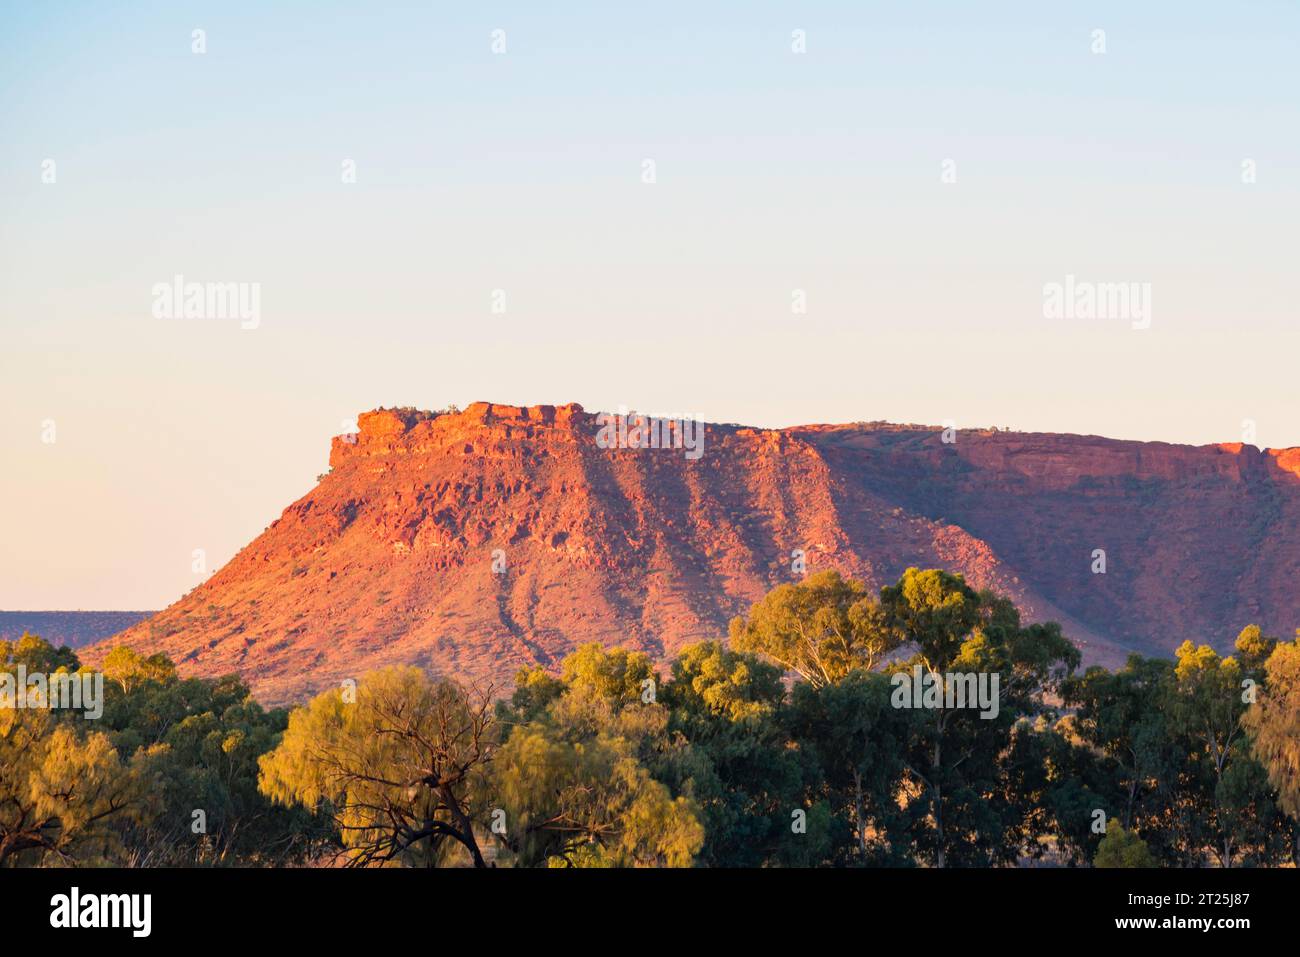 Die Gorge Gill Range in der Nähe des Kings Canyon (Watarrka) Northern Territory, Australien, mit Wüsteneichen (Allocasuarina decaisneana) im Vordergrund Stockfoto